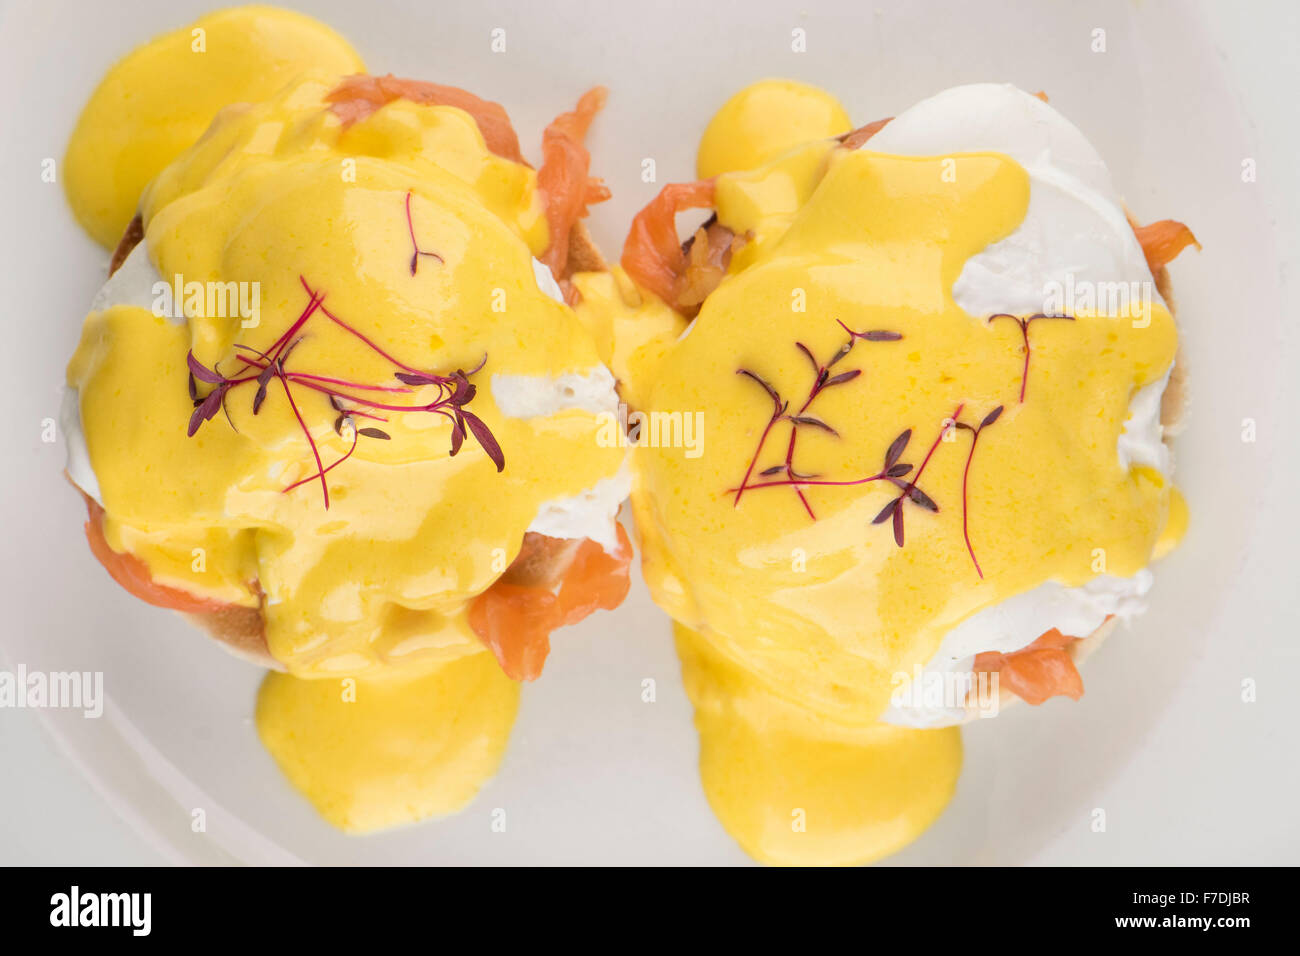 Eiern Royale Frühstück bestehend aus einem englischen Muffin, Räucherlachs und Eiern mit Sauce Hollandaise serviert auf einem weißen Teller Stockfoto